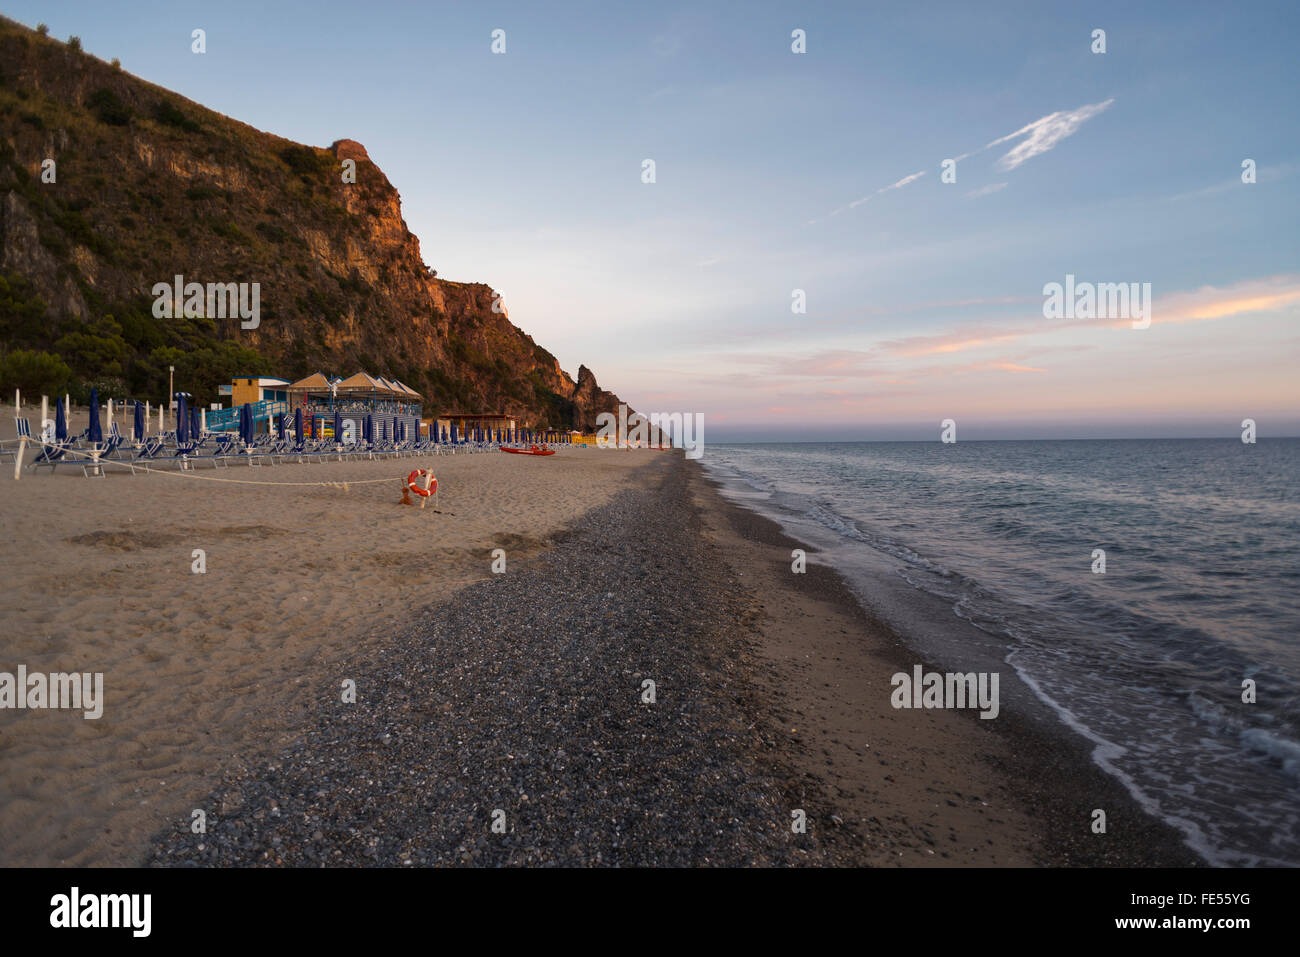 Liegestühle, Strandbäder und Sonnenschirme am Strand Mingardo an der Mittelmeerküste im Cilento im letzten Sonnenlicht, Kampanien, Italien Stockfoto